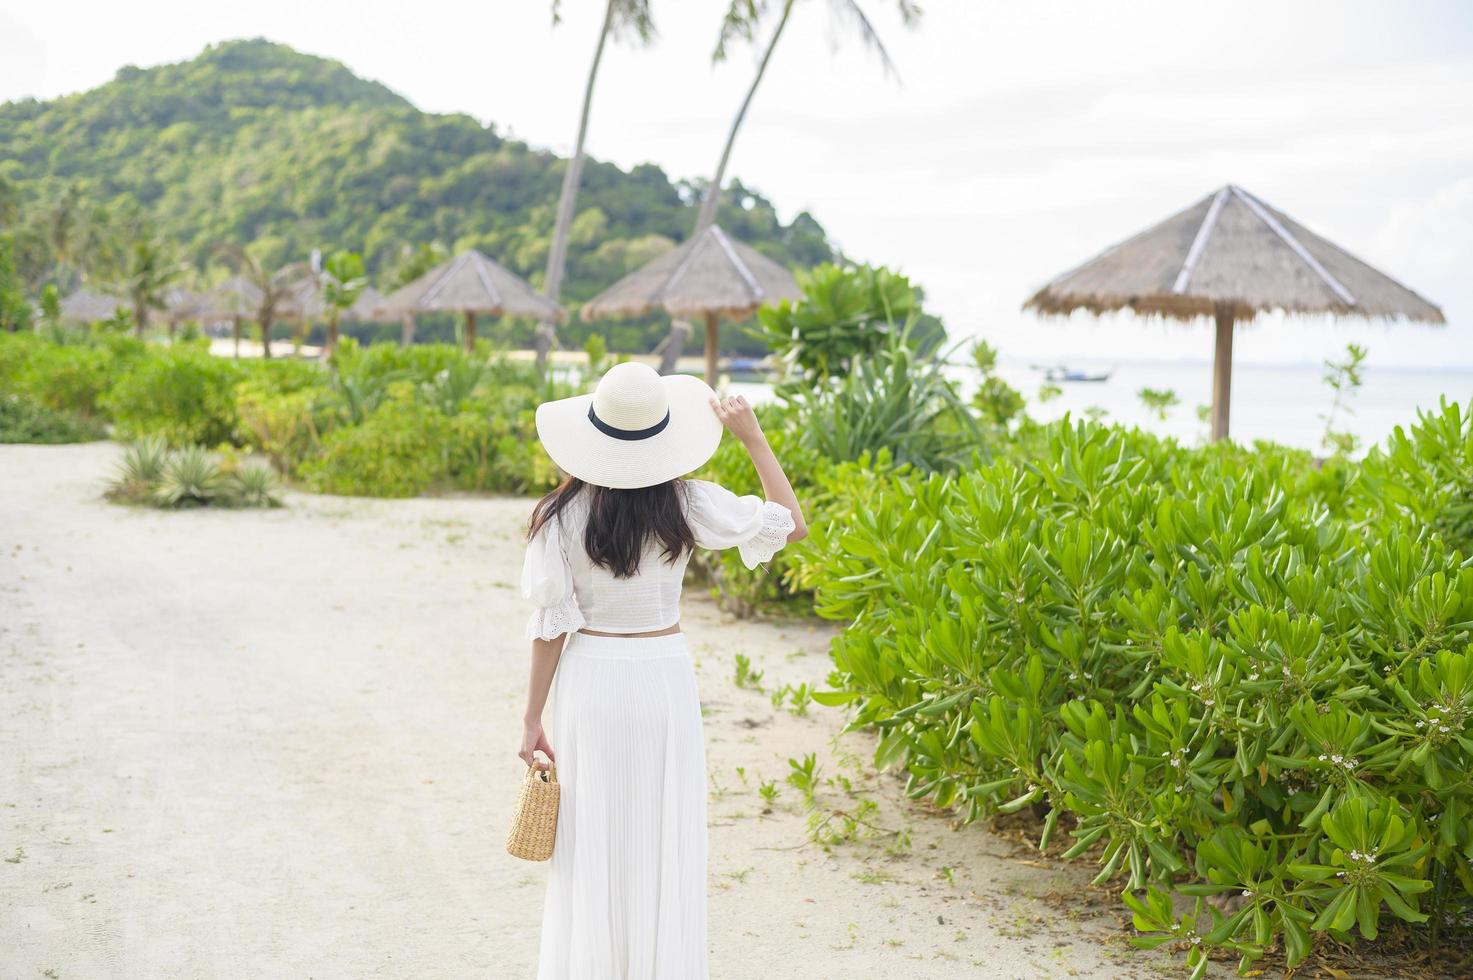 een gelukkige mooie vrouw in een witte jurk die geniet en ontspant op het strand, zomer en vakantie concept foto